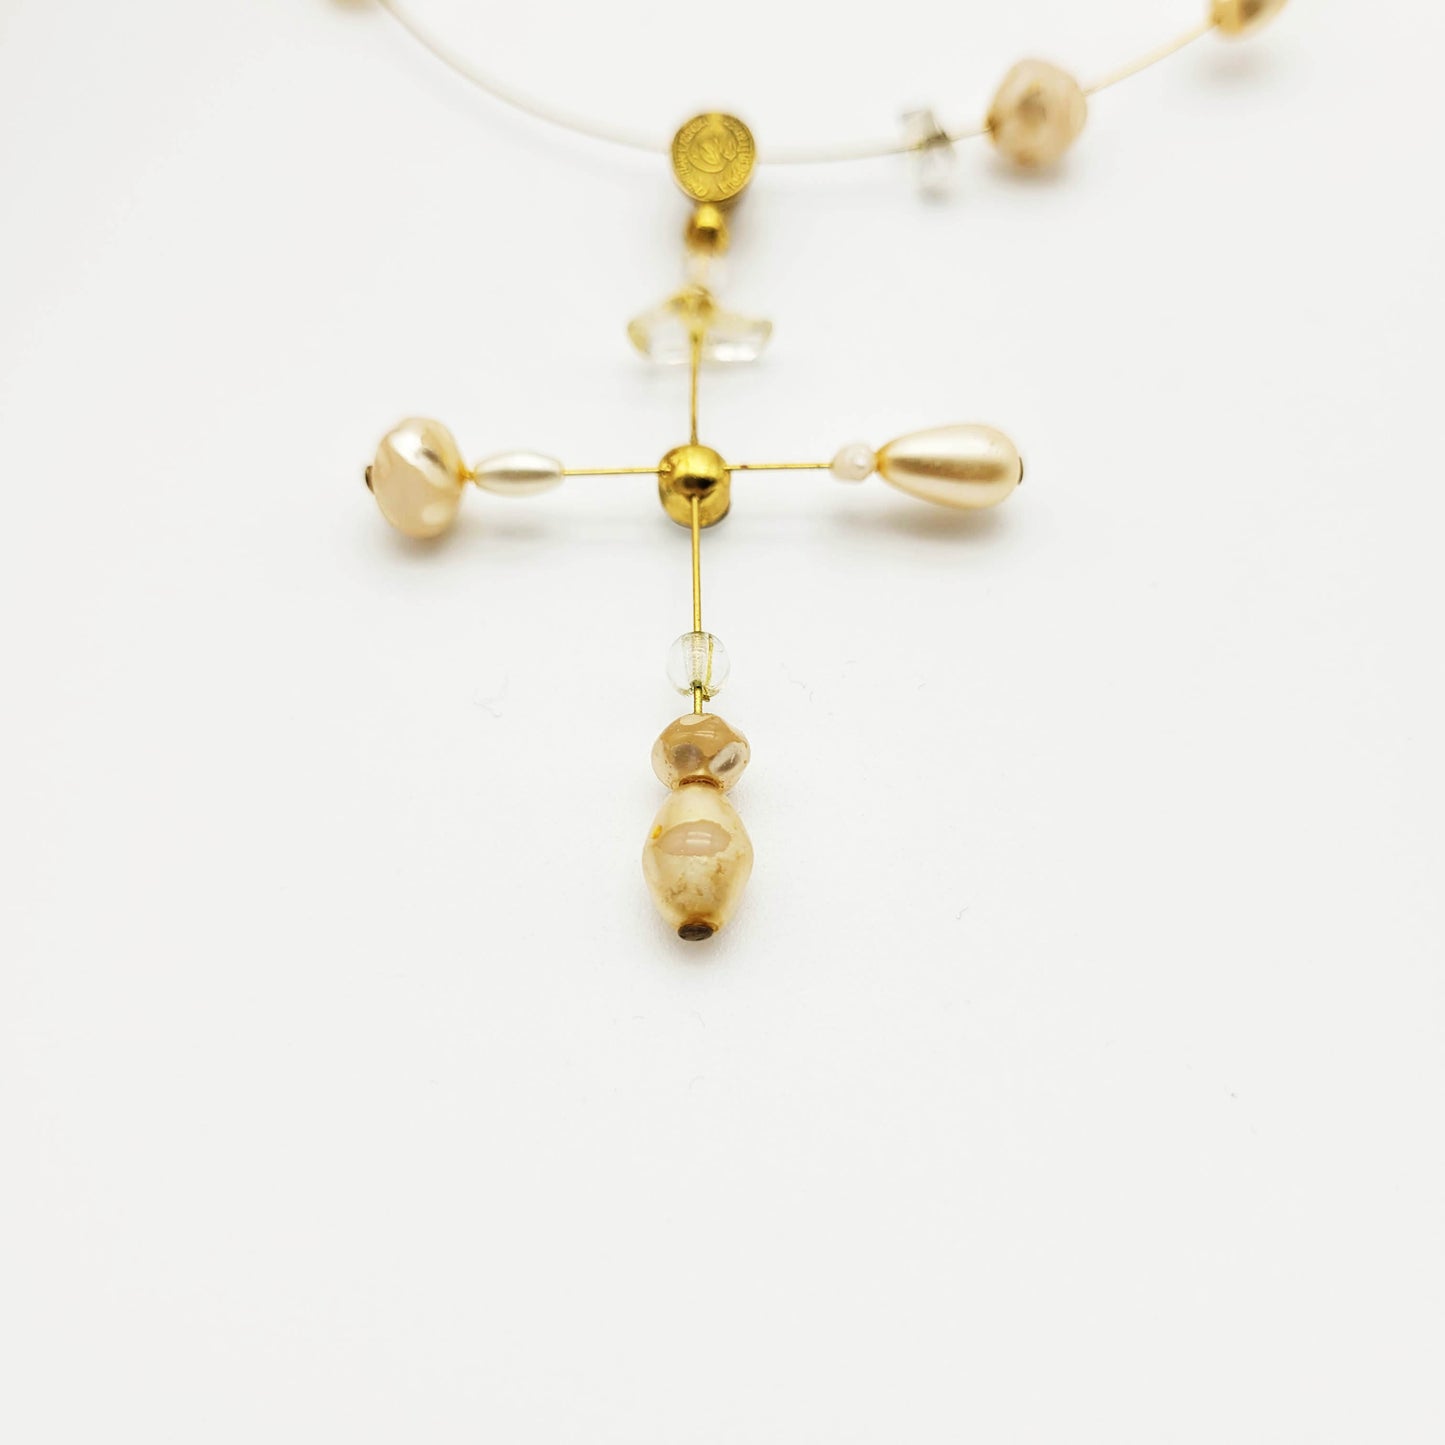 Vintage cross necklace Christian Lacroix